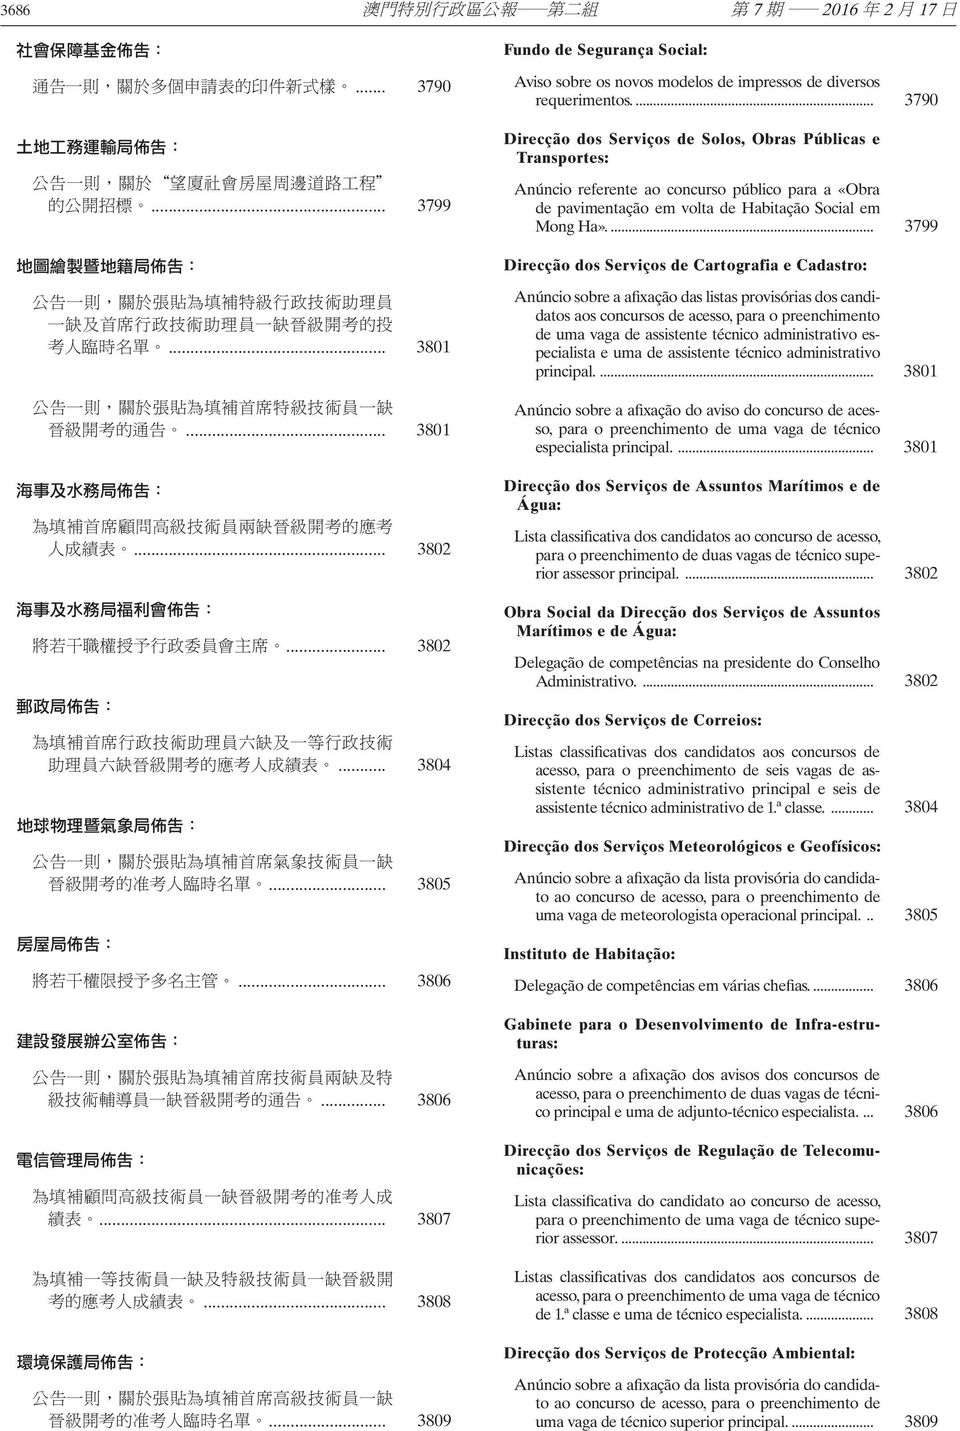 ... 3790 Direcção dos Serviços de Solos, Obras Públicas e Transportes: Anúncio referente ao concurso público para a «Obra de pavimentação em volta de Habitação Social em Mong Ha».